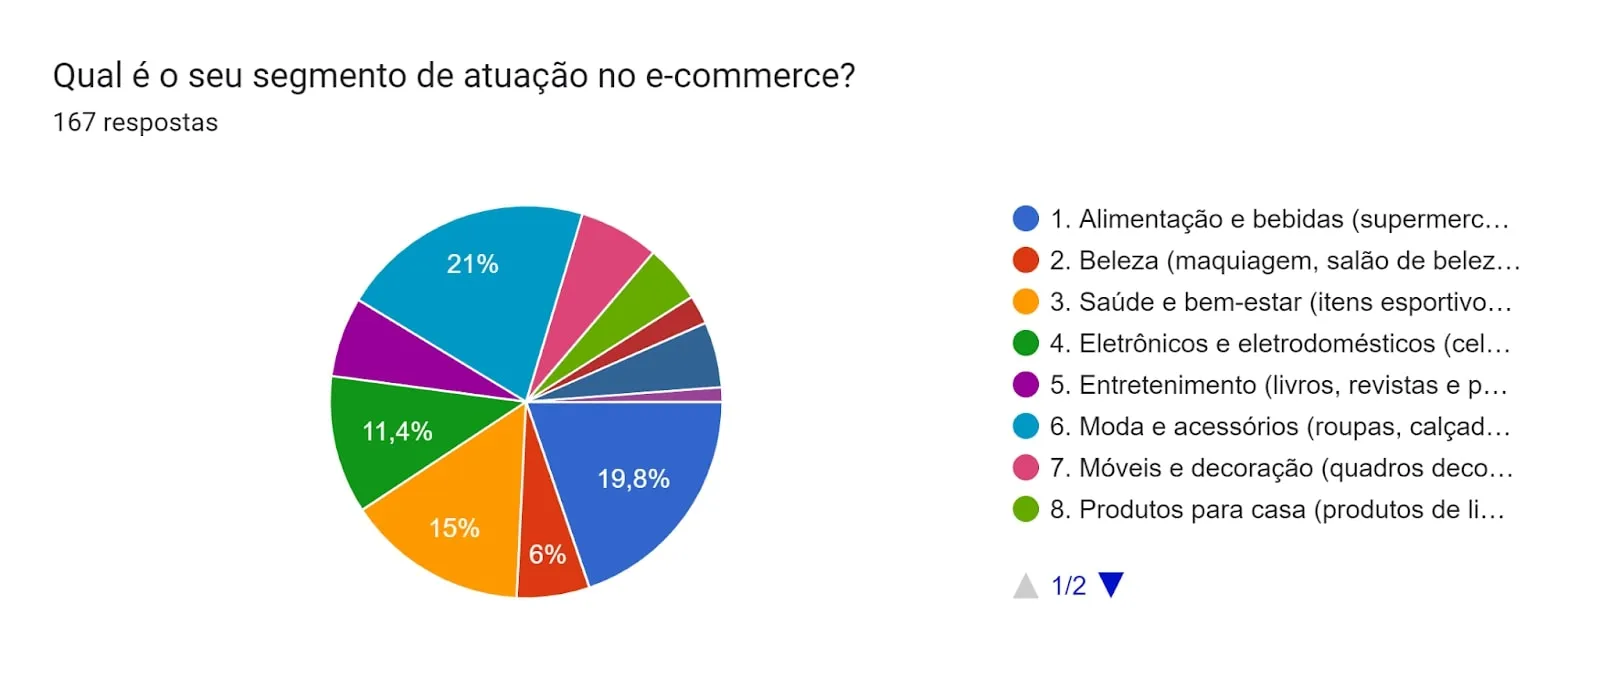 Gráfico de pizza indicando quais são os segmentos de atuação das marcas no e-commerce